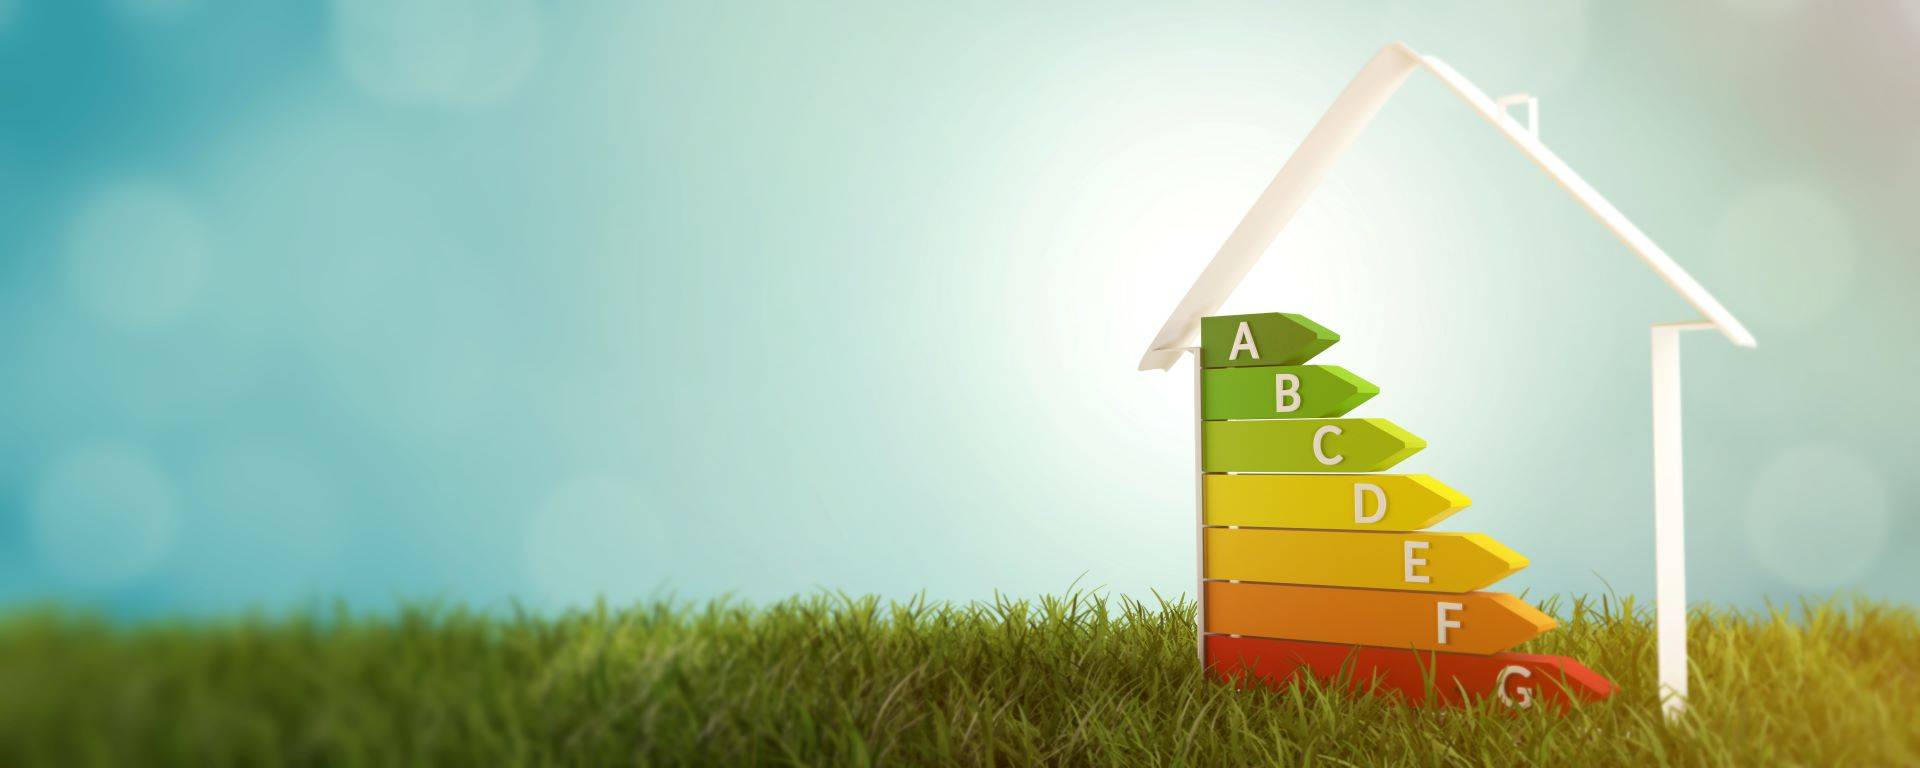 Energieeffizienz-Rating eines Hauses auf grünem Rasen, symbolisiert durch farbige Pfeile von A bis G, passend zu Photovoltaikanlagen in Leipzig